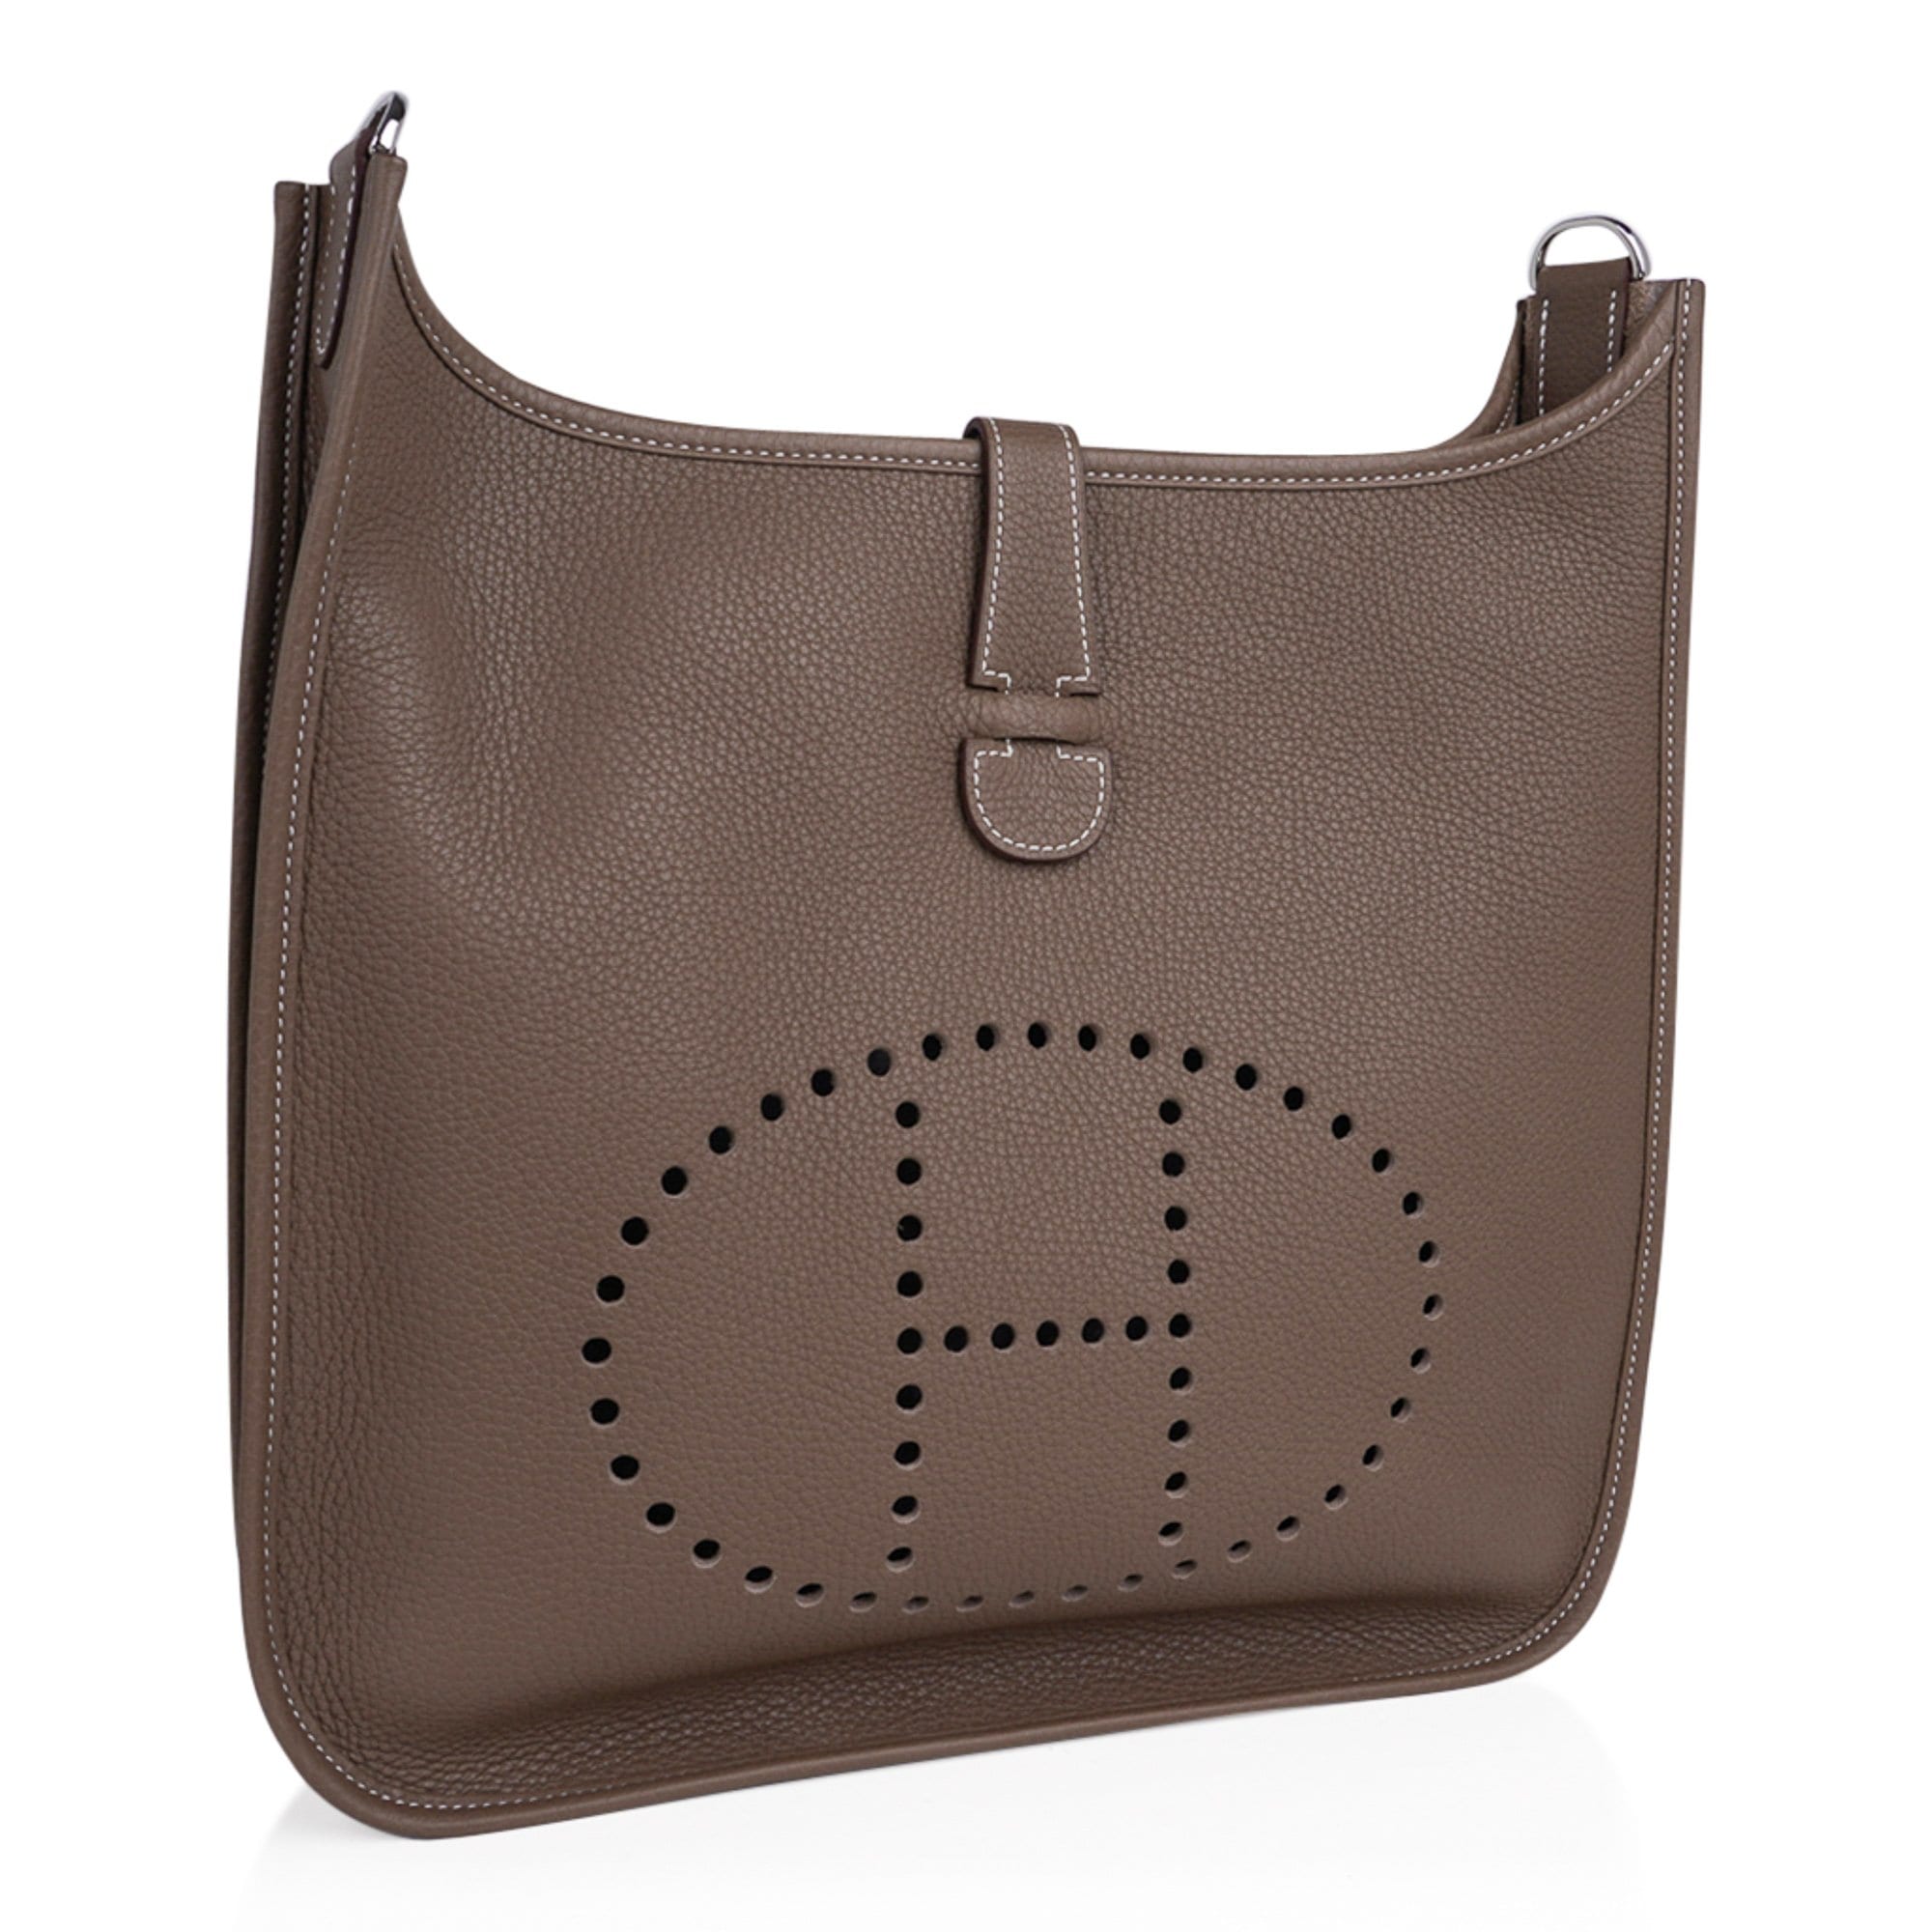 Hermes Bag Evelyne GM Etoupe Clemence Palladium Hardware New w/ Box